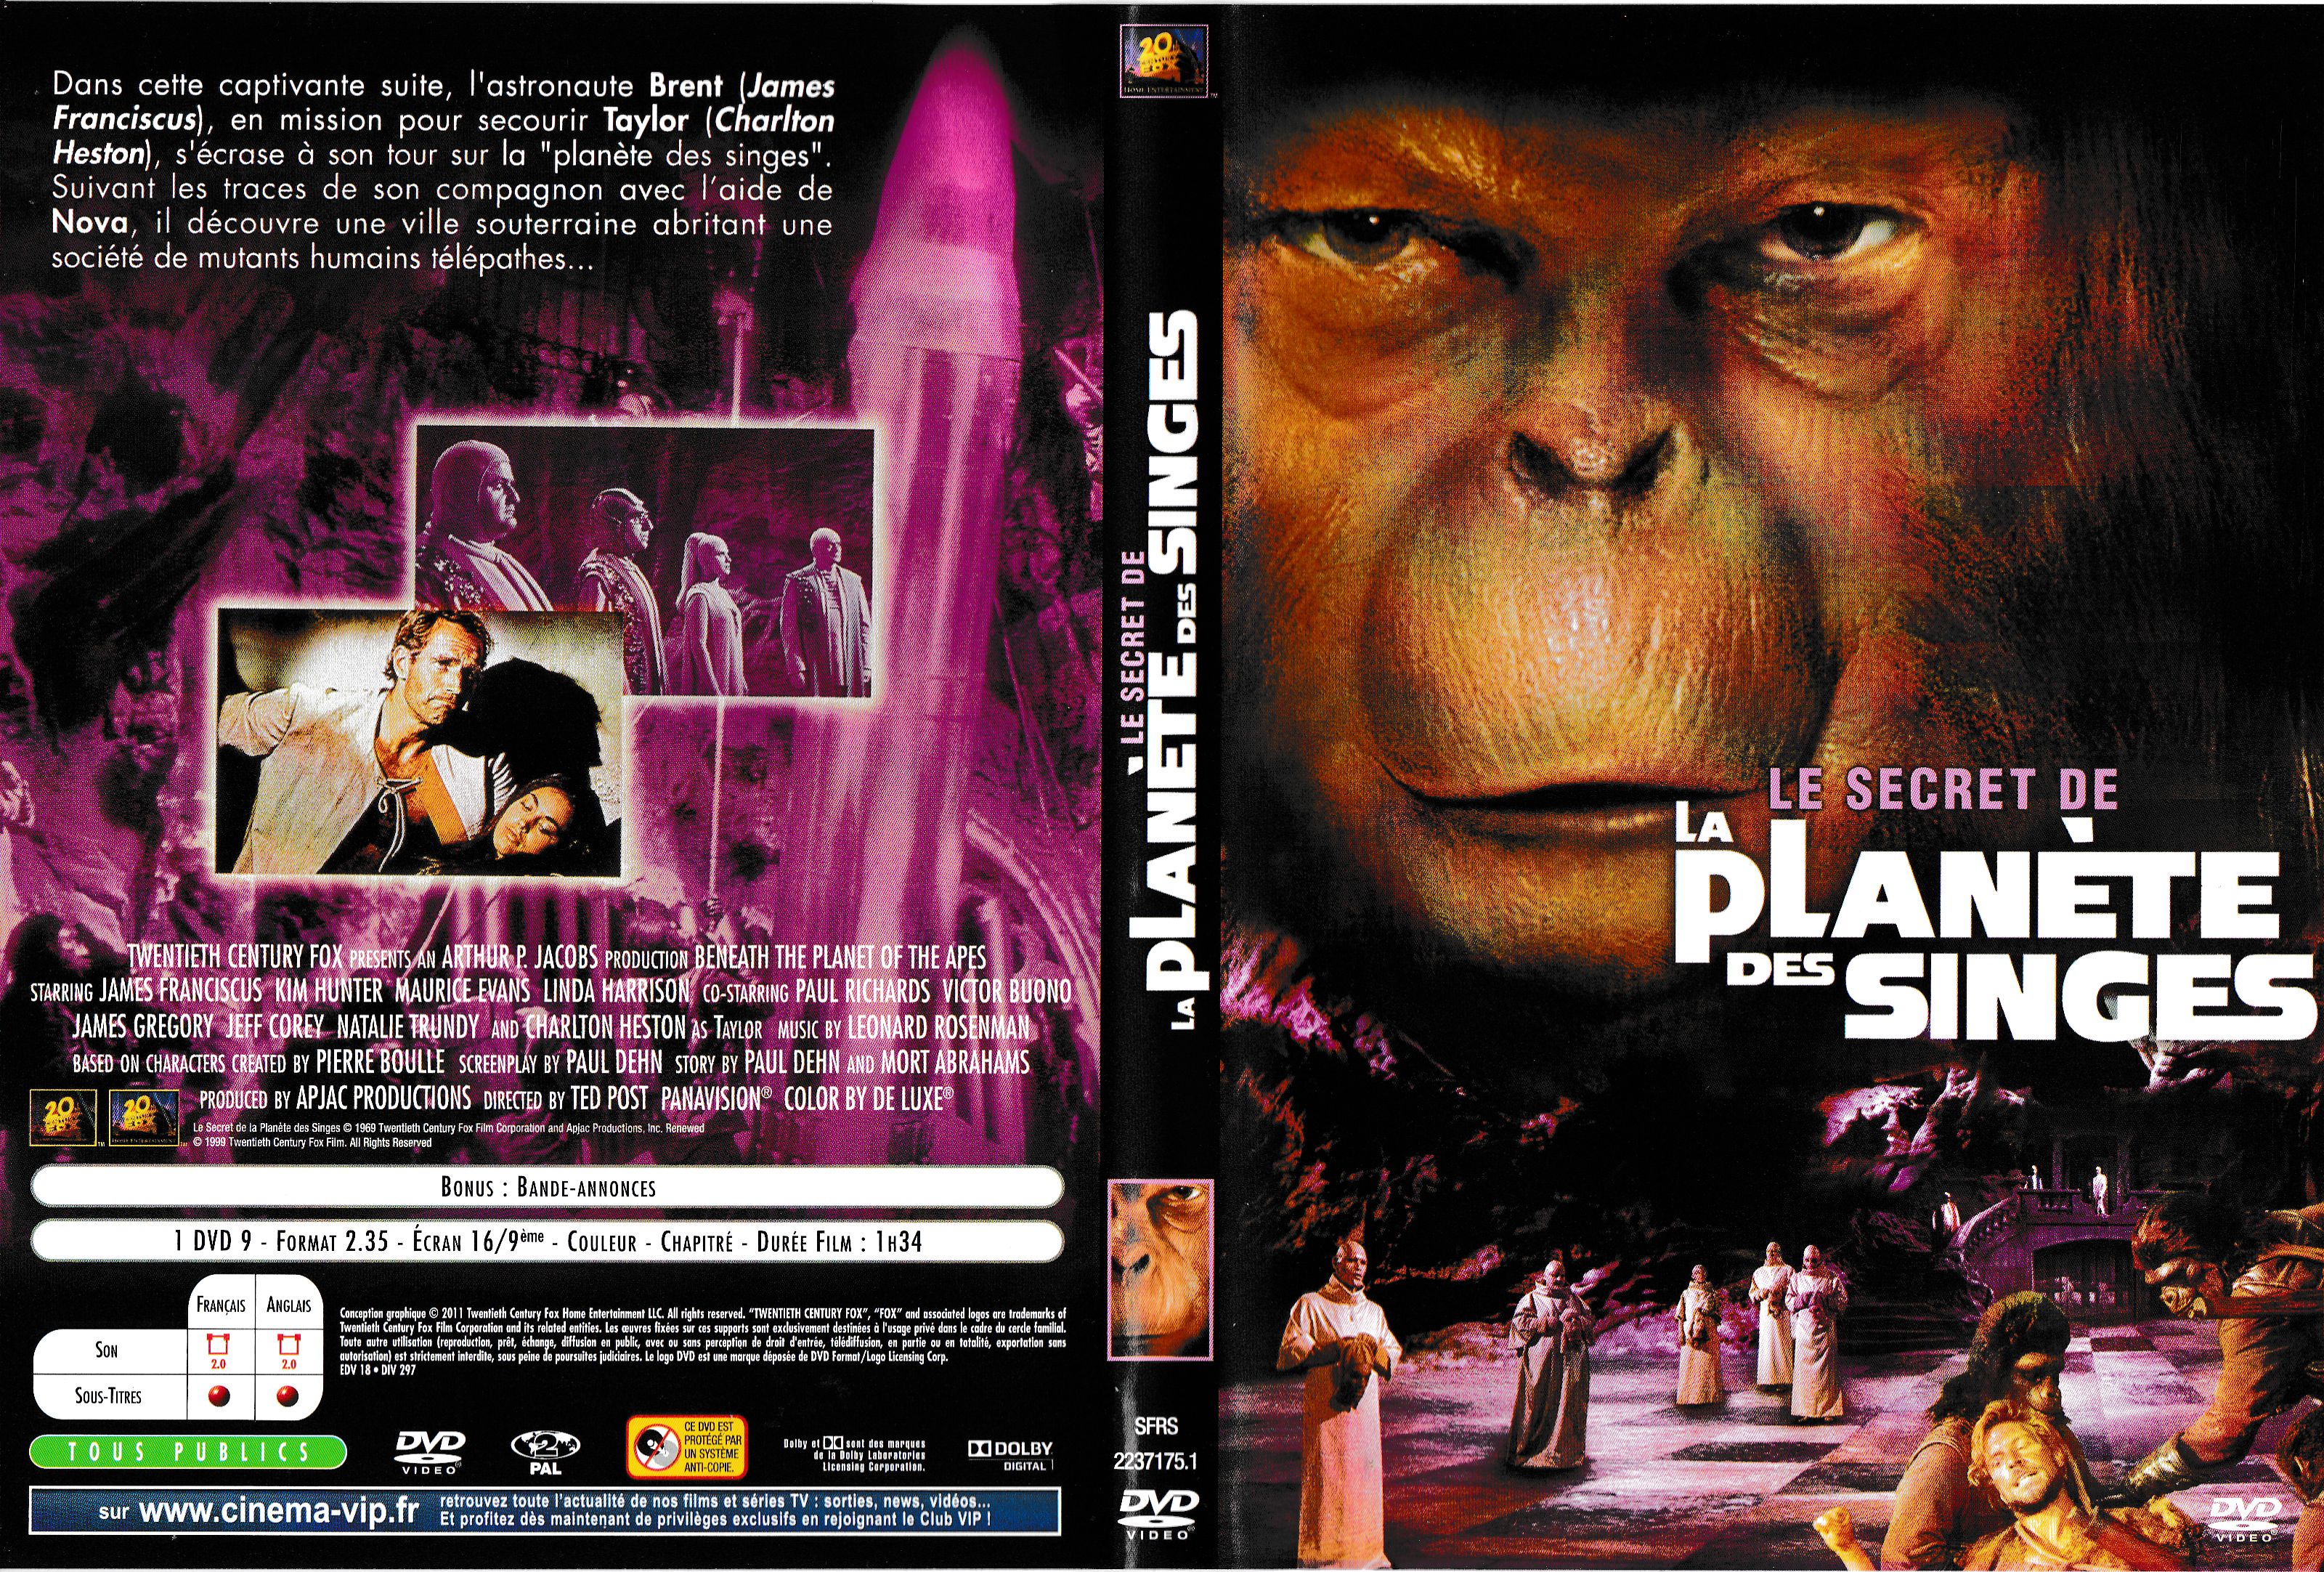 Jaquette DVD Le secret de la planete des singes v2